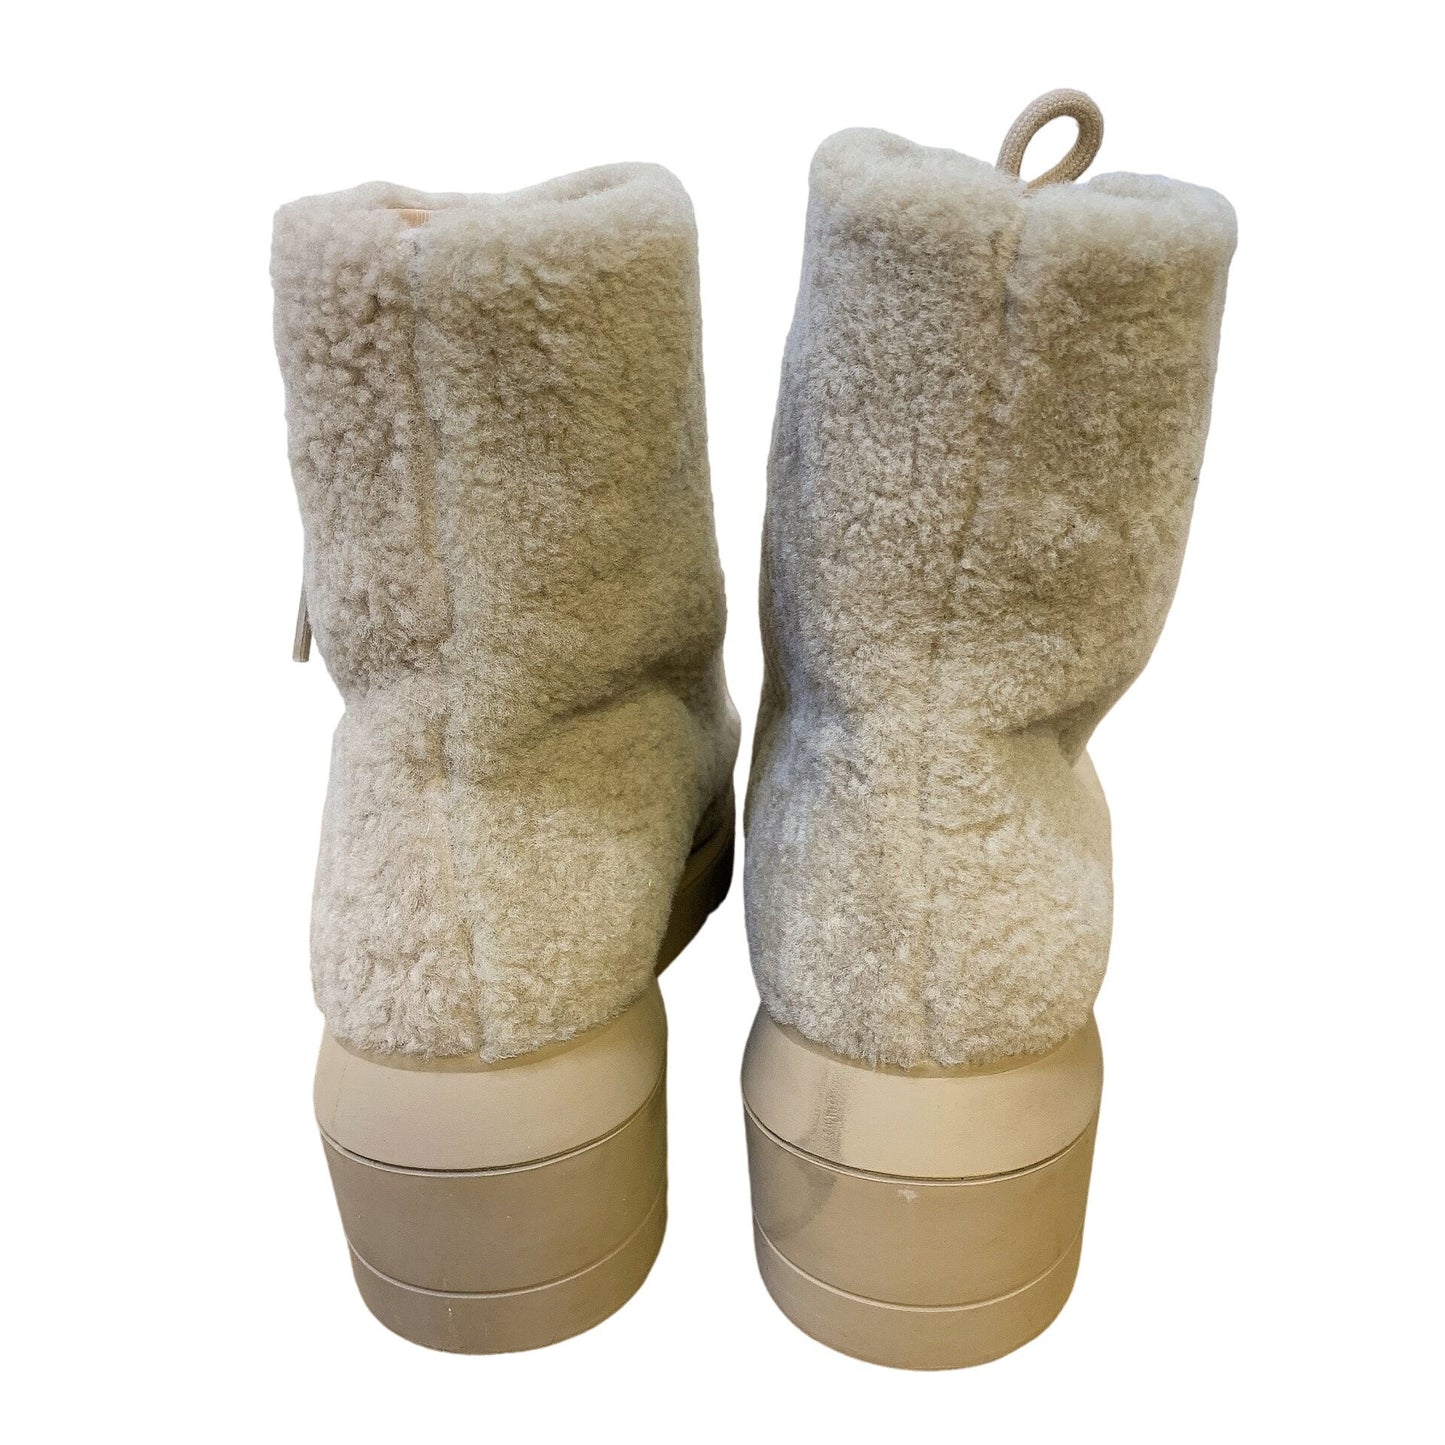 *Stuart Weitzman Tan Faux Fur Lace-up Ankle Boots Size 9.5